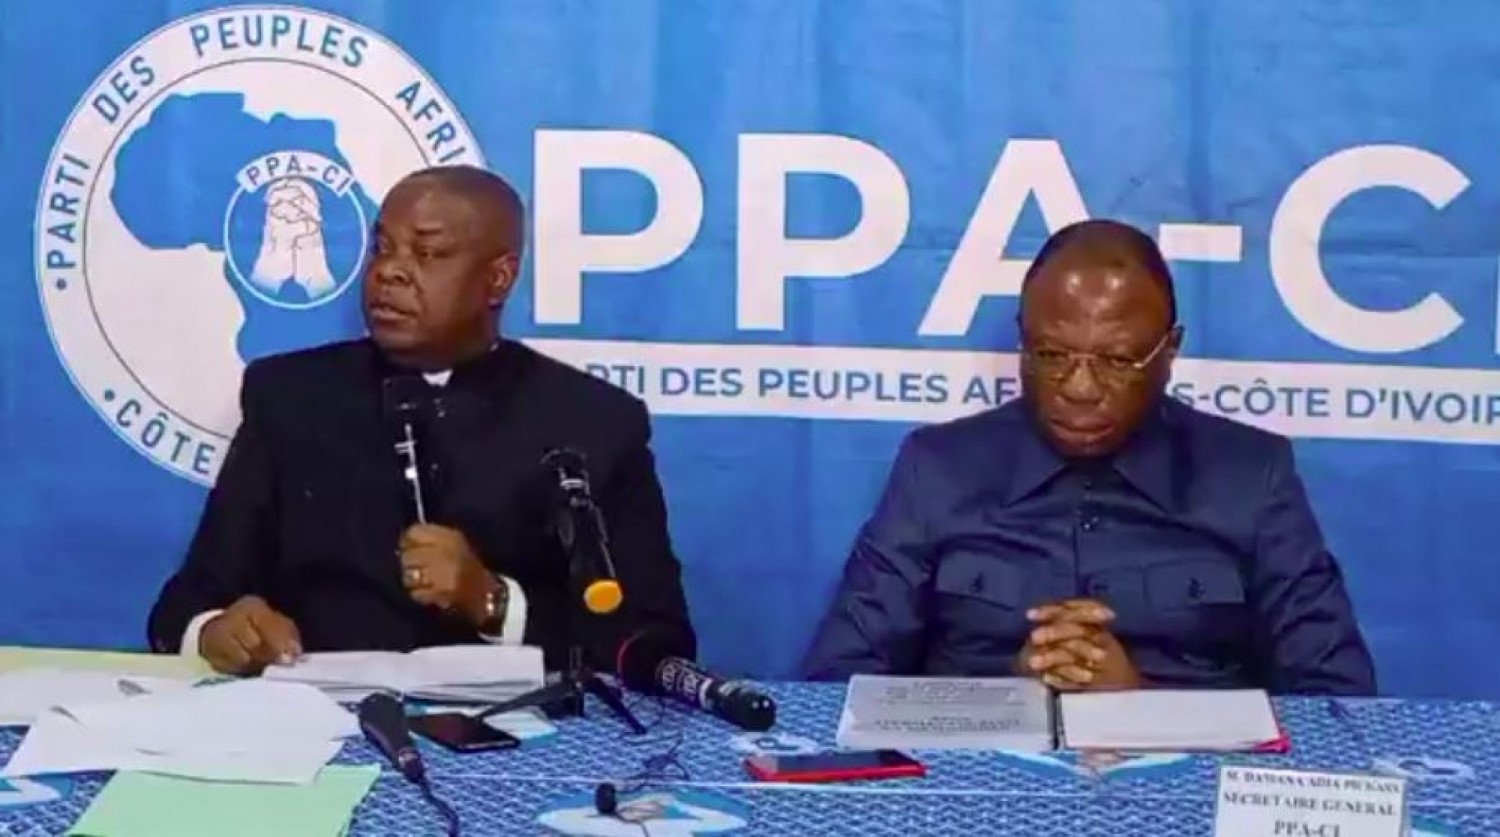 Côte d'Ivoire : Gbagbo radié de la liste électorale, à Cocody, 350 jeunes font des réclamations, Damana Pickass « le cas de Gbagbo est devenu un cas personnel du président de la CEI »